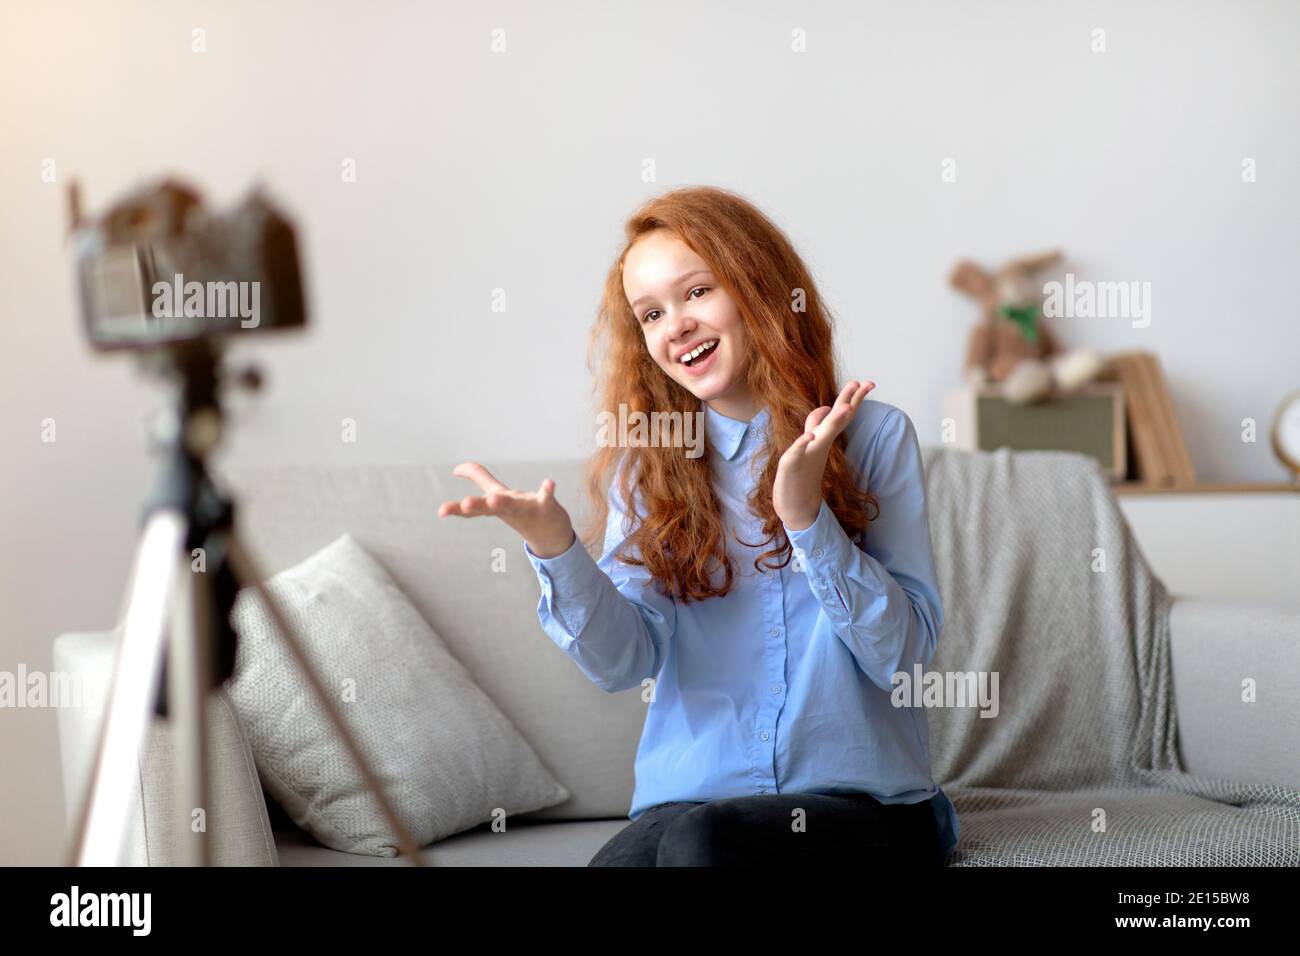 Rothaarige Teen Girl Aufnahme Ihres Blogs, Gespräch Mit Kamera Stockfoto